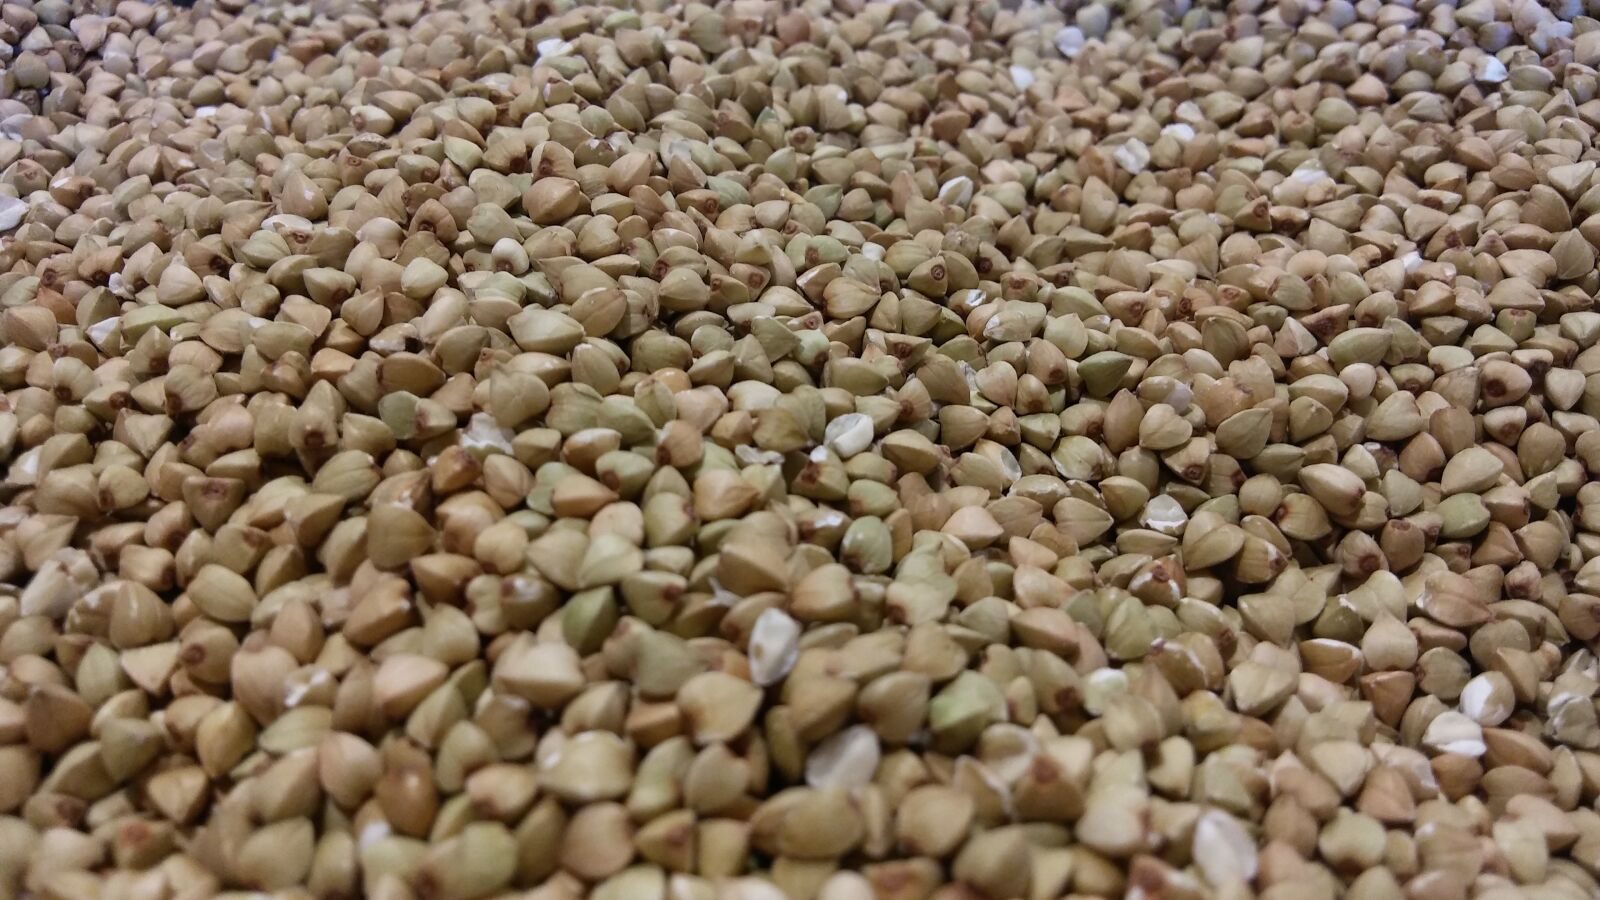 LG K10 sample photo. Wheat, saracen, grain photography